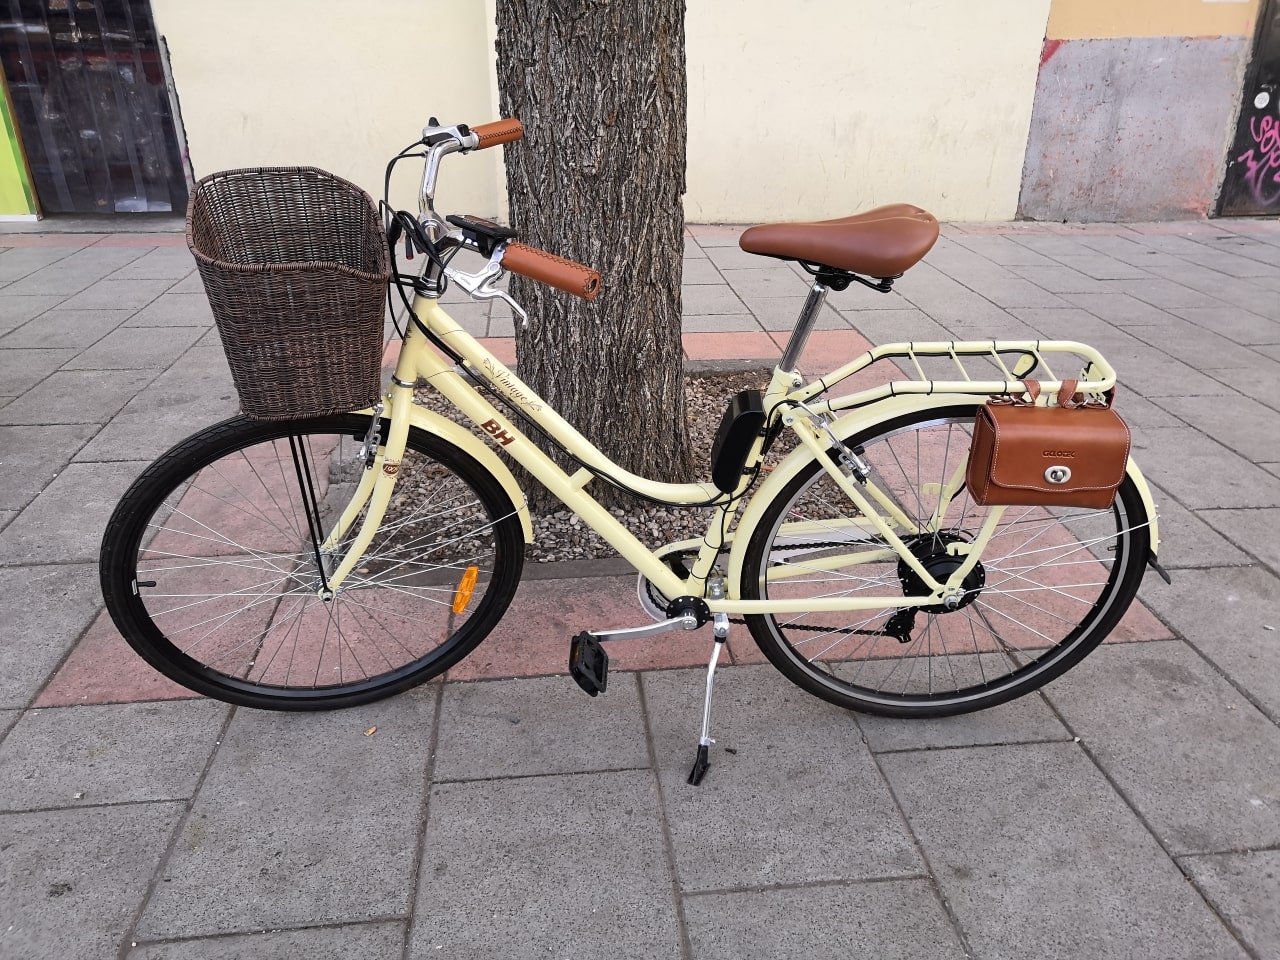 Intestinos Viajero finalizando BH-urbana-convertida-electrica-kit-vintage - El blog de Bike & Roll